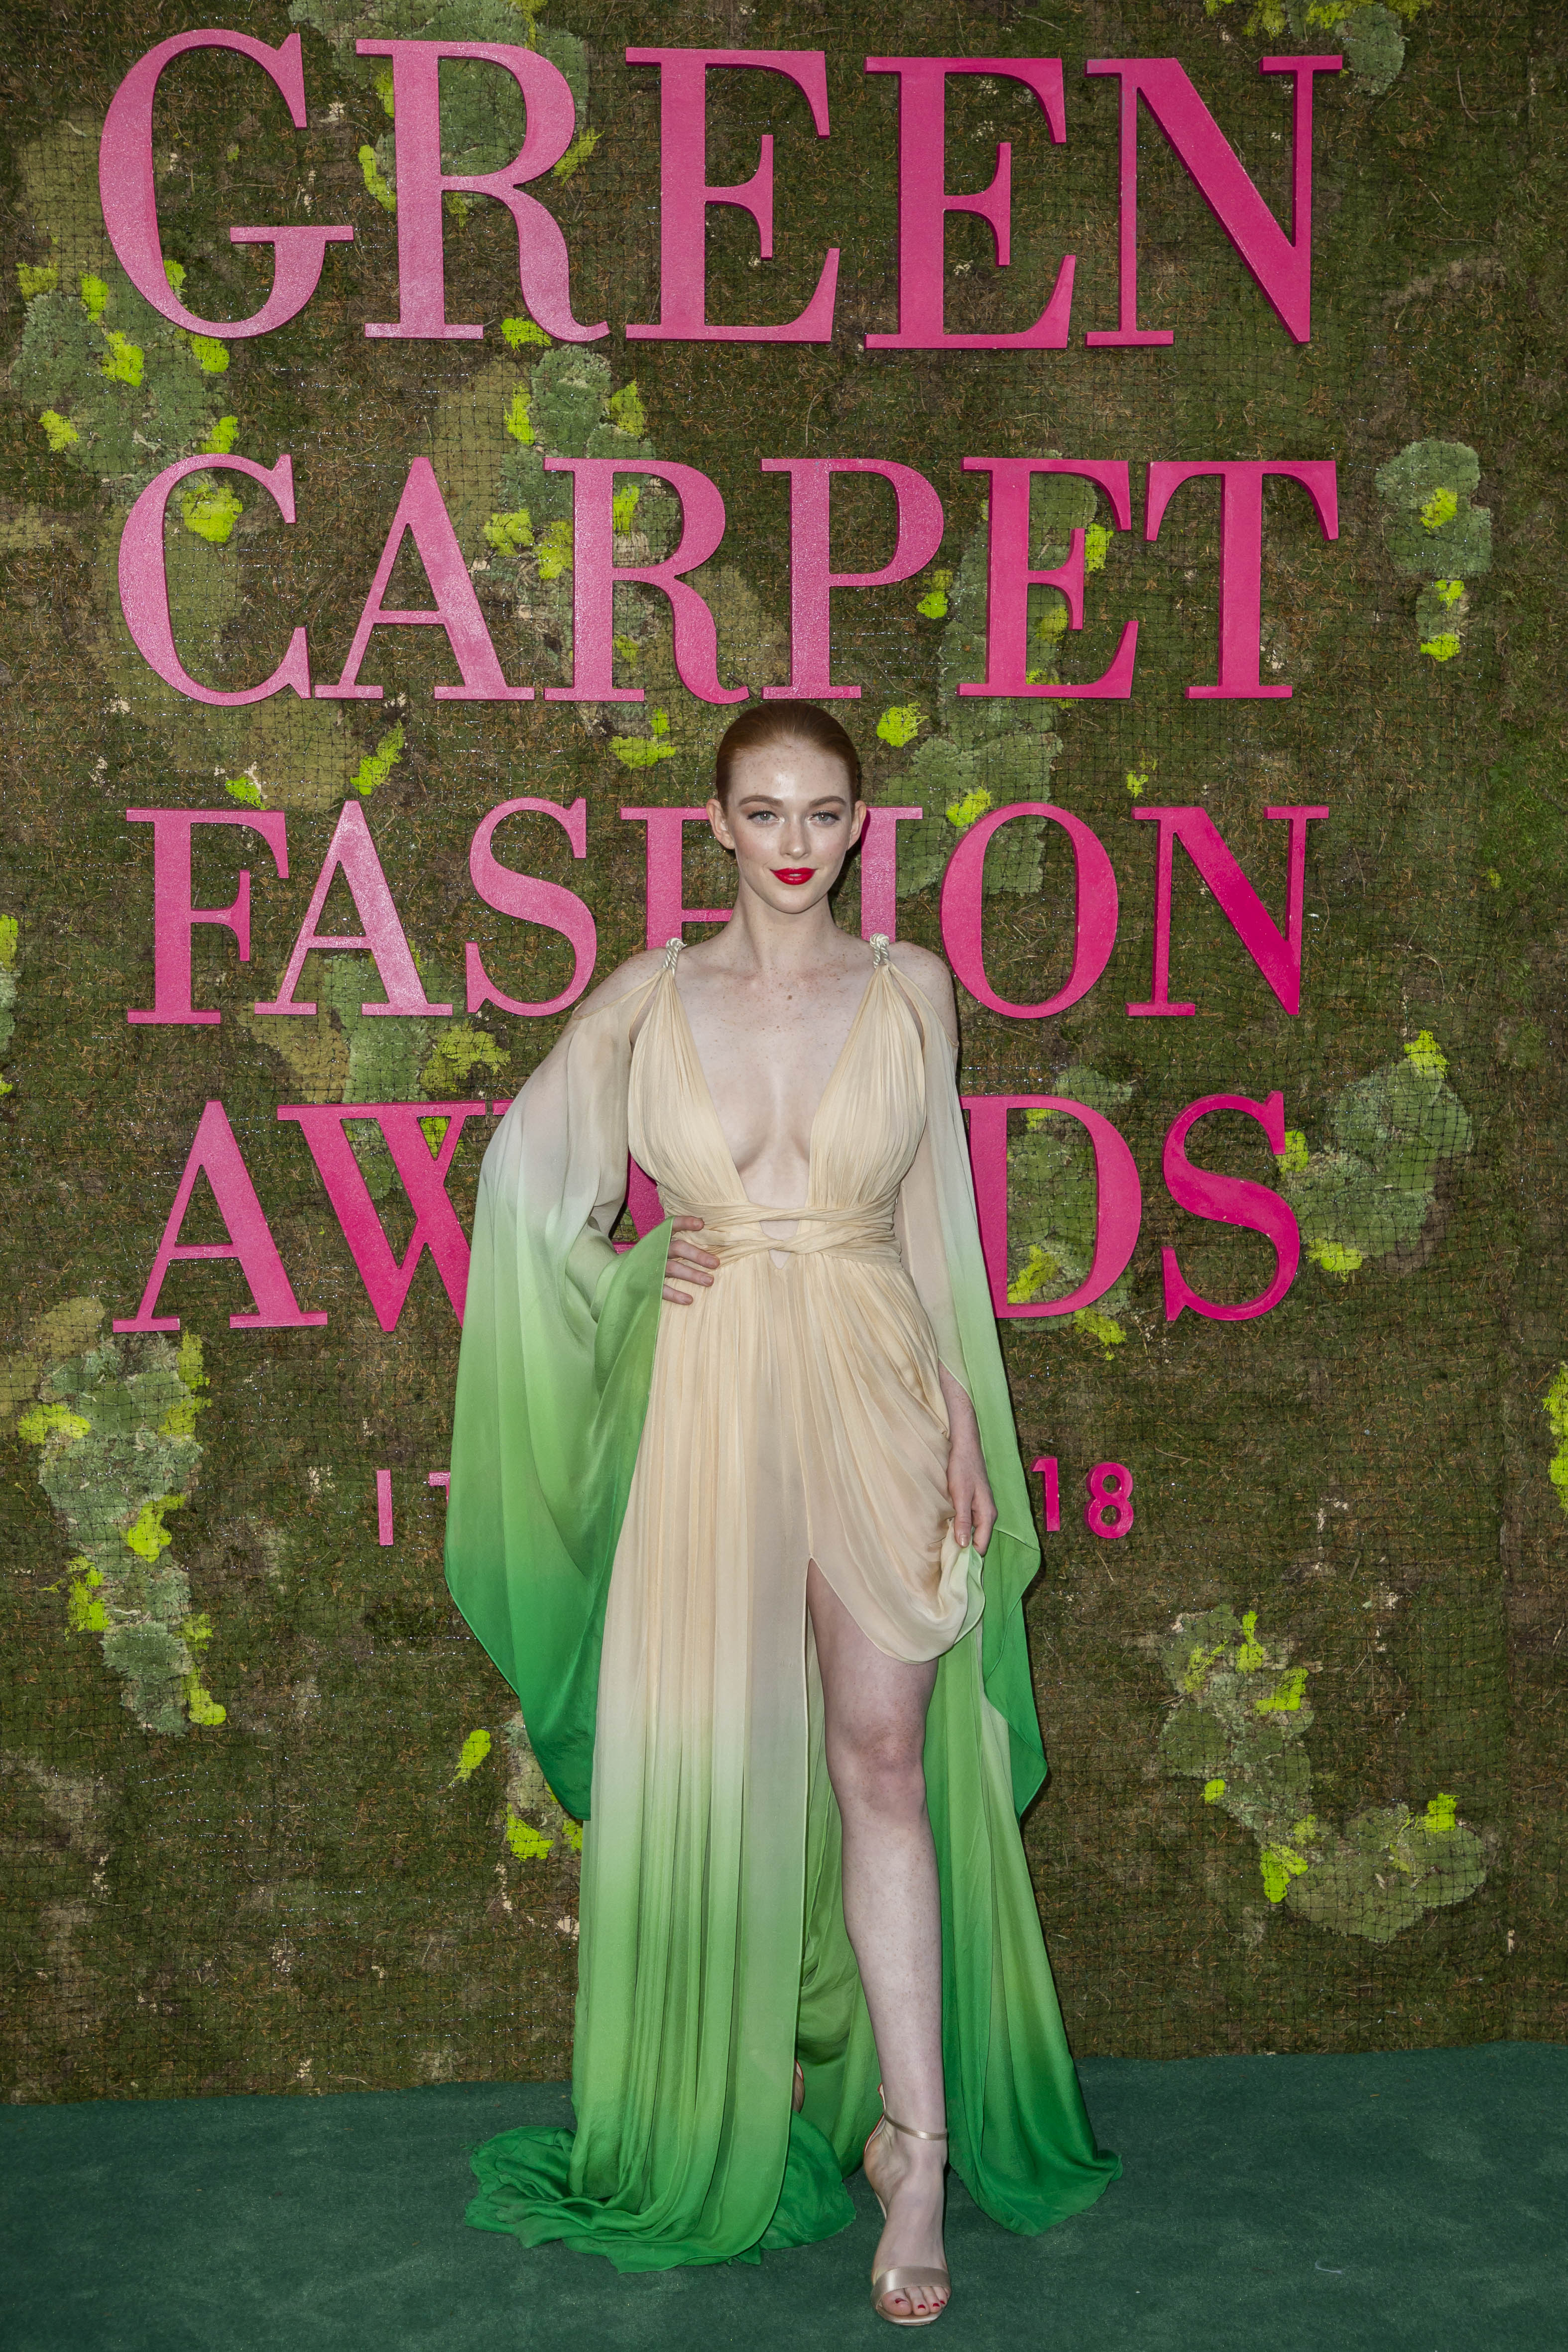 larsen-thompson-green-carpet-fashion-awards-in-milan-92318-10.jpg